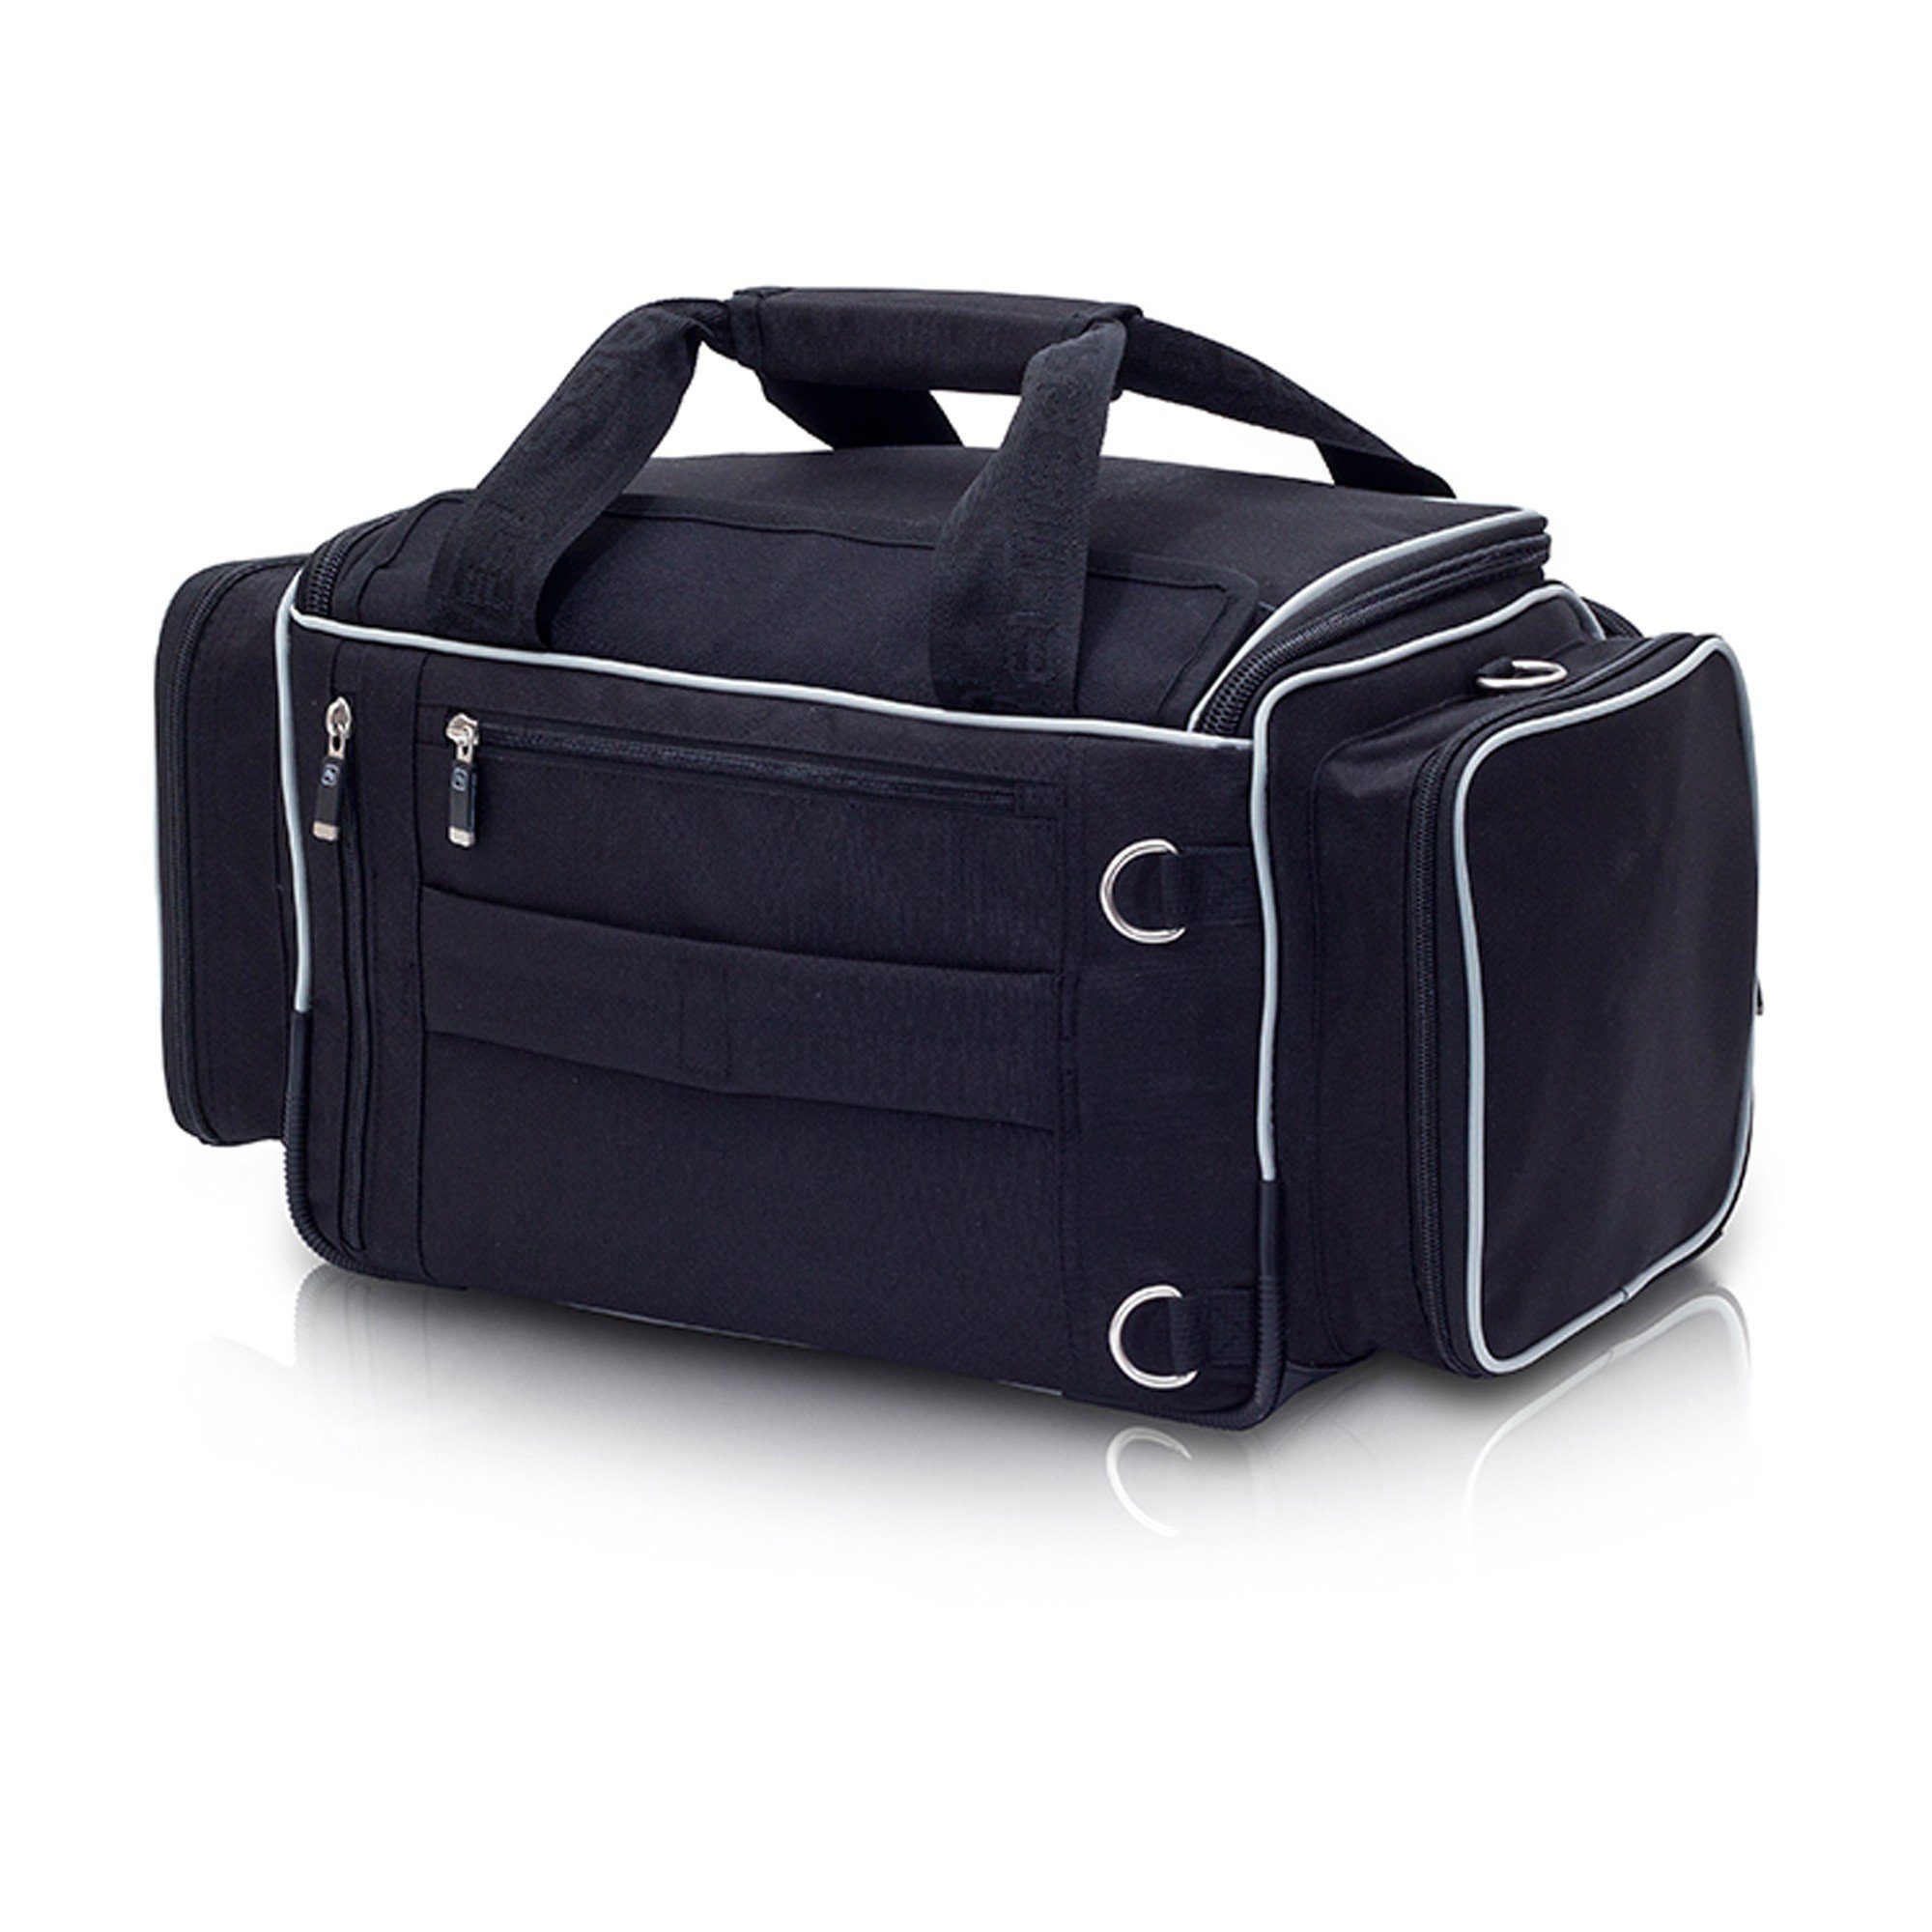 Schwarz Bags Bags MEDIC´S Softbag-Arzttasche 27 x 29 Elite Elite x Arzttasche cm 46